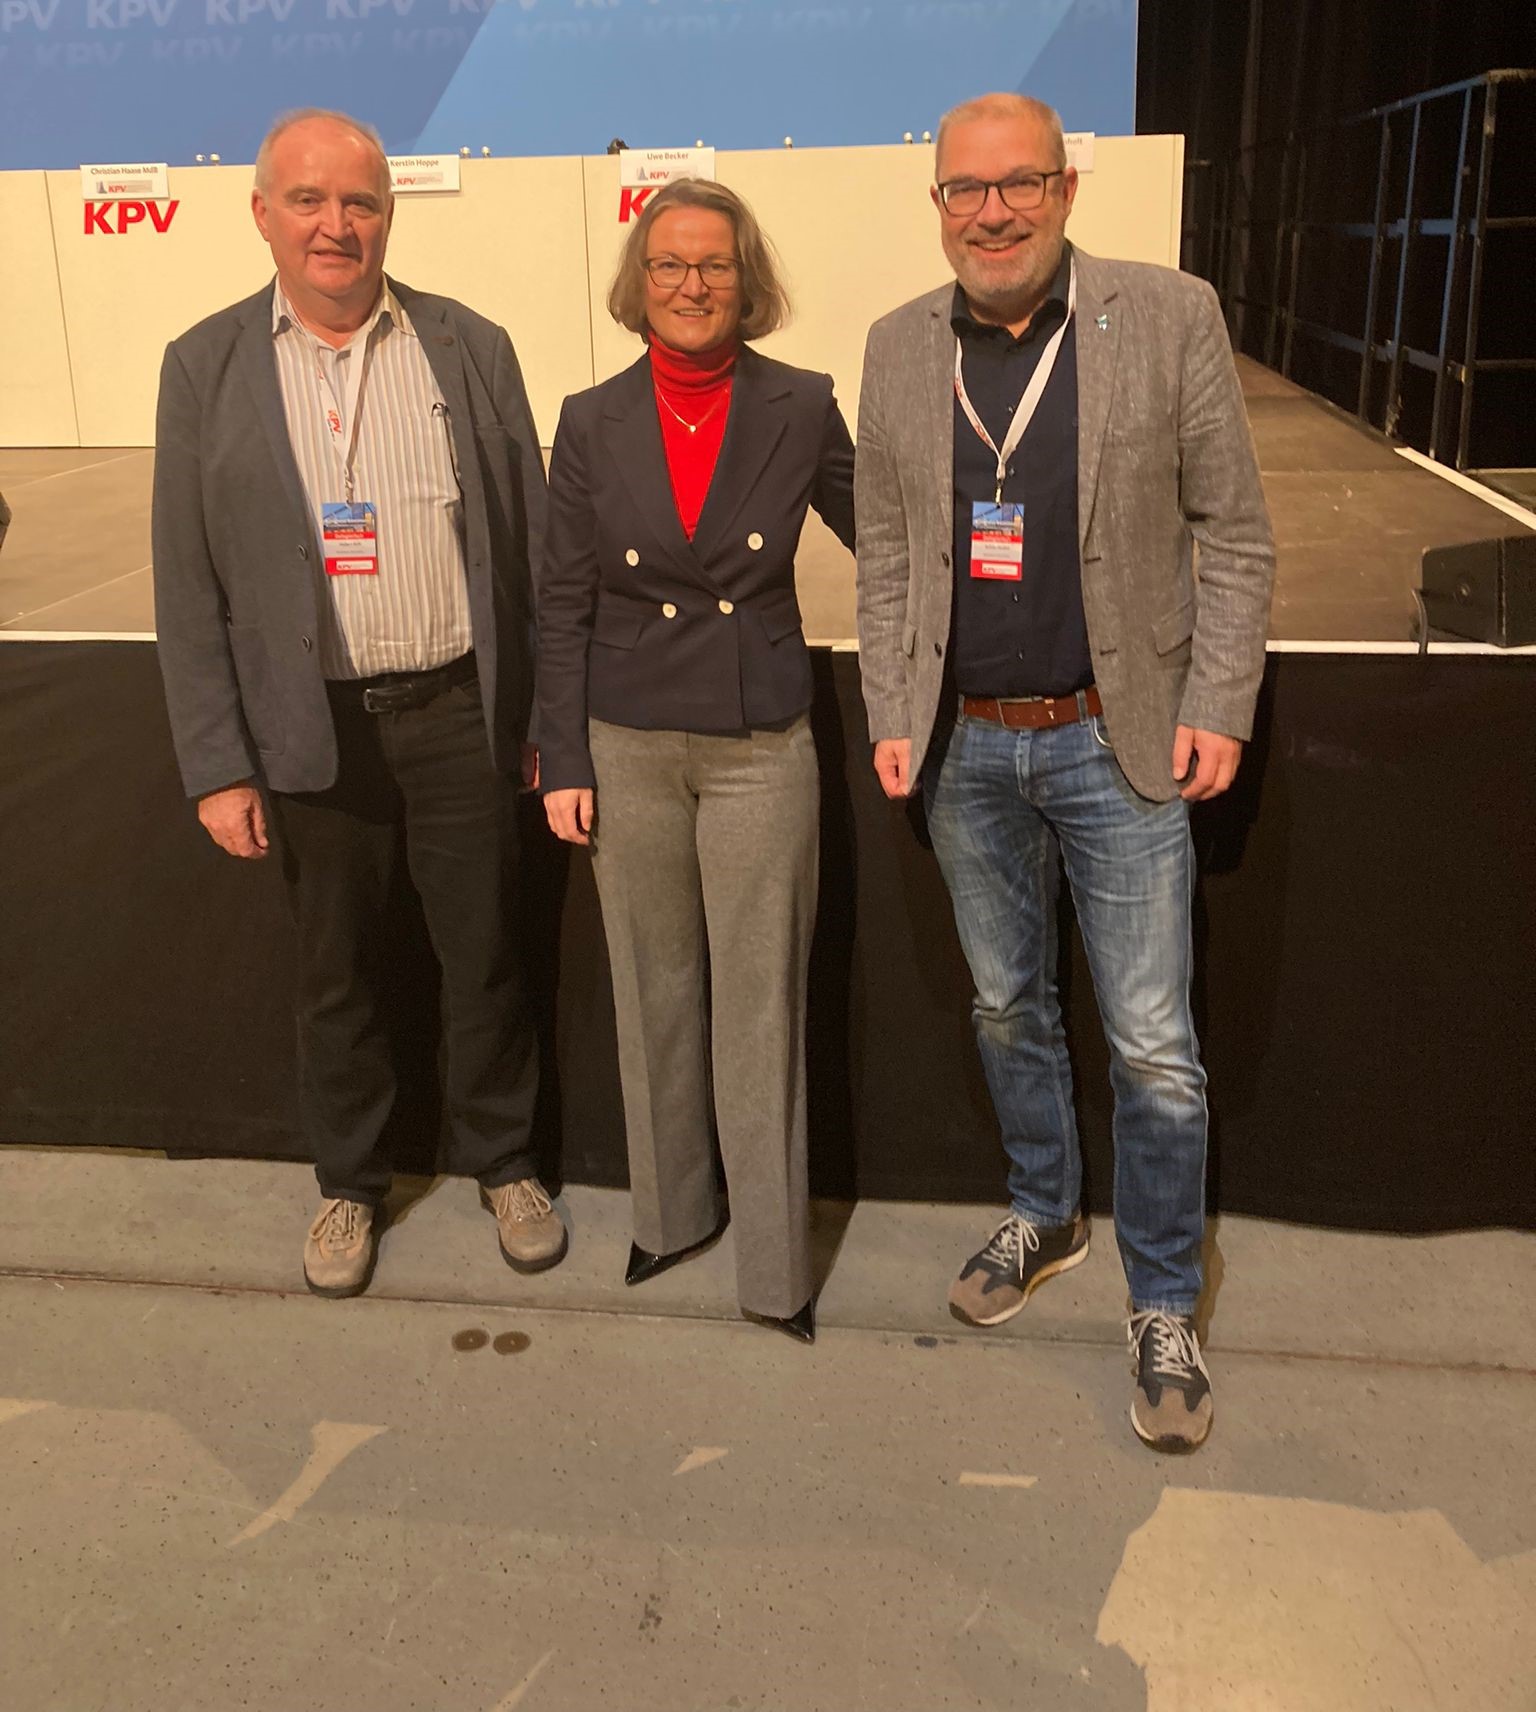 Hubert Brill, Ministerin Ina Scharrenbach, Achim Henkel bei der KPV Bundesvertreterversammlung (Foto: privat)